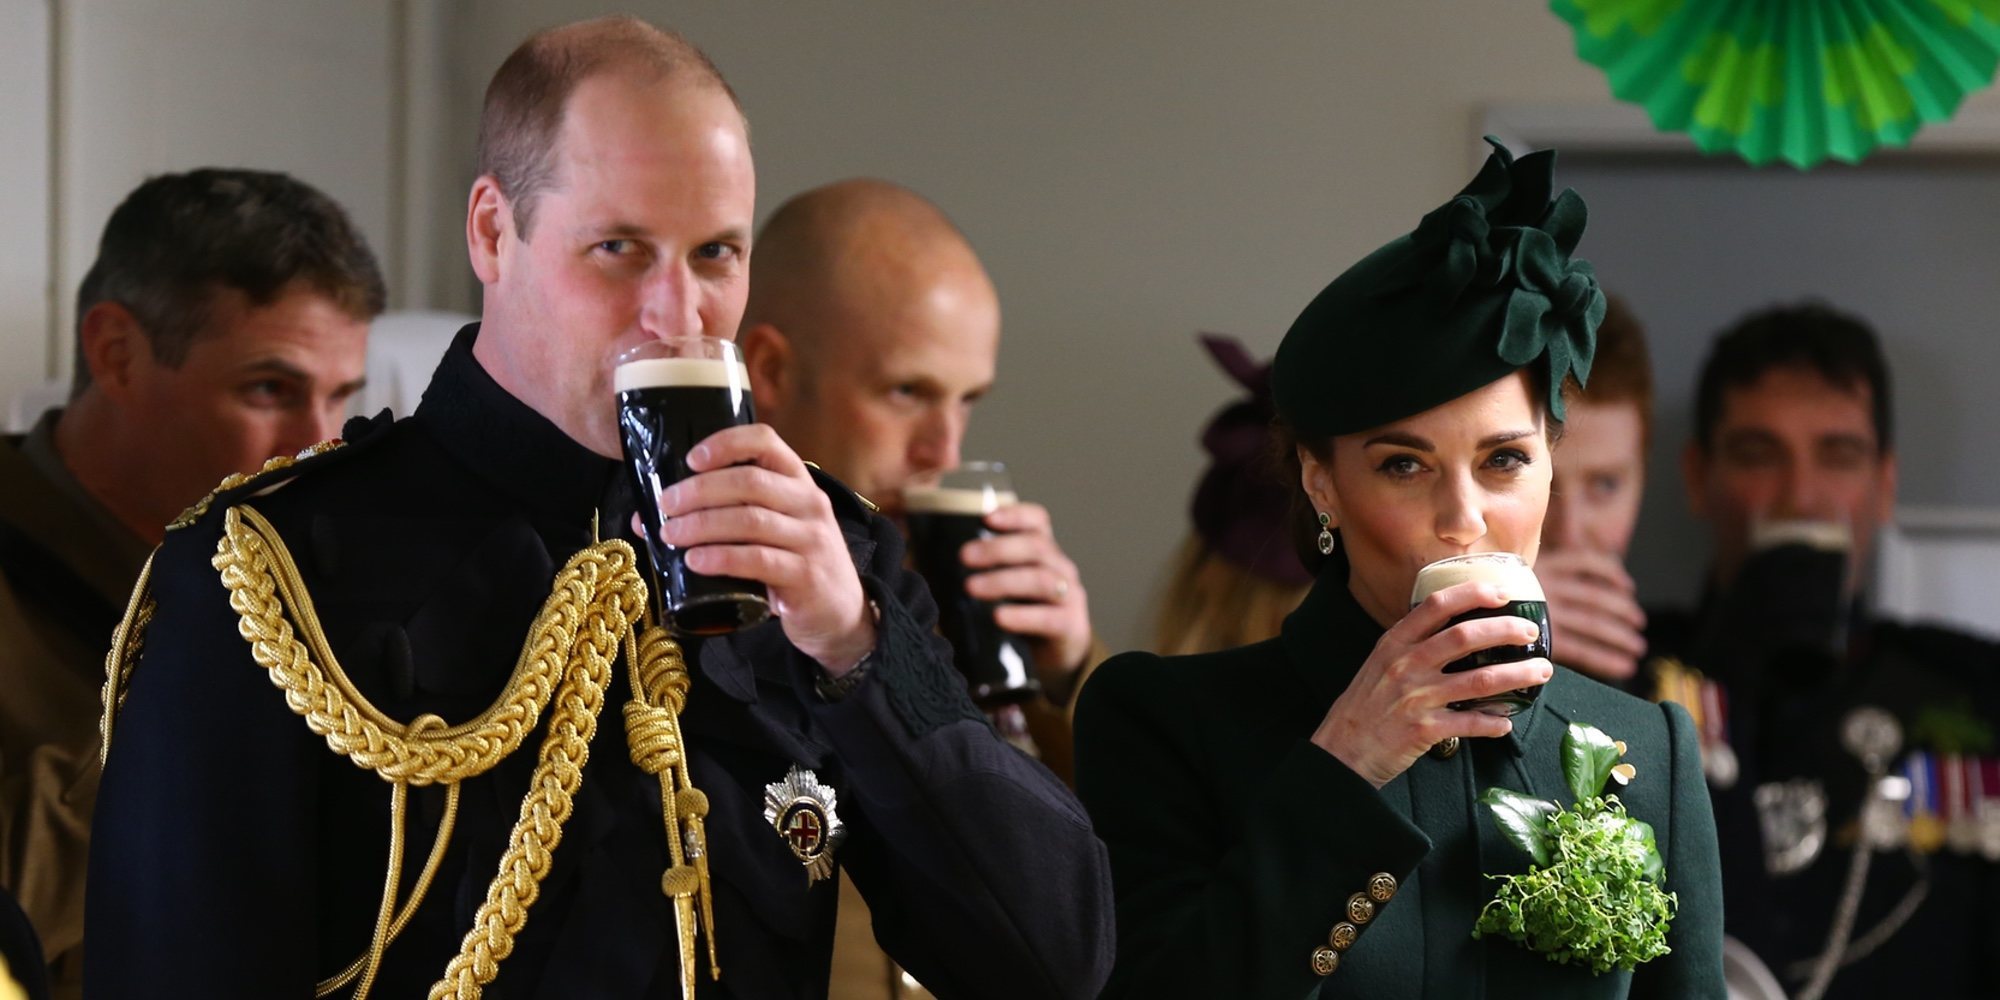 El Príncipe Guillermo y Kate Middleton celebran San Patricio de verde y con una Guinness